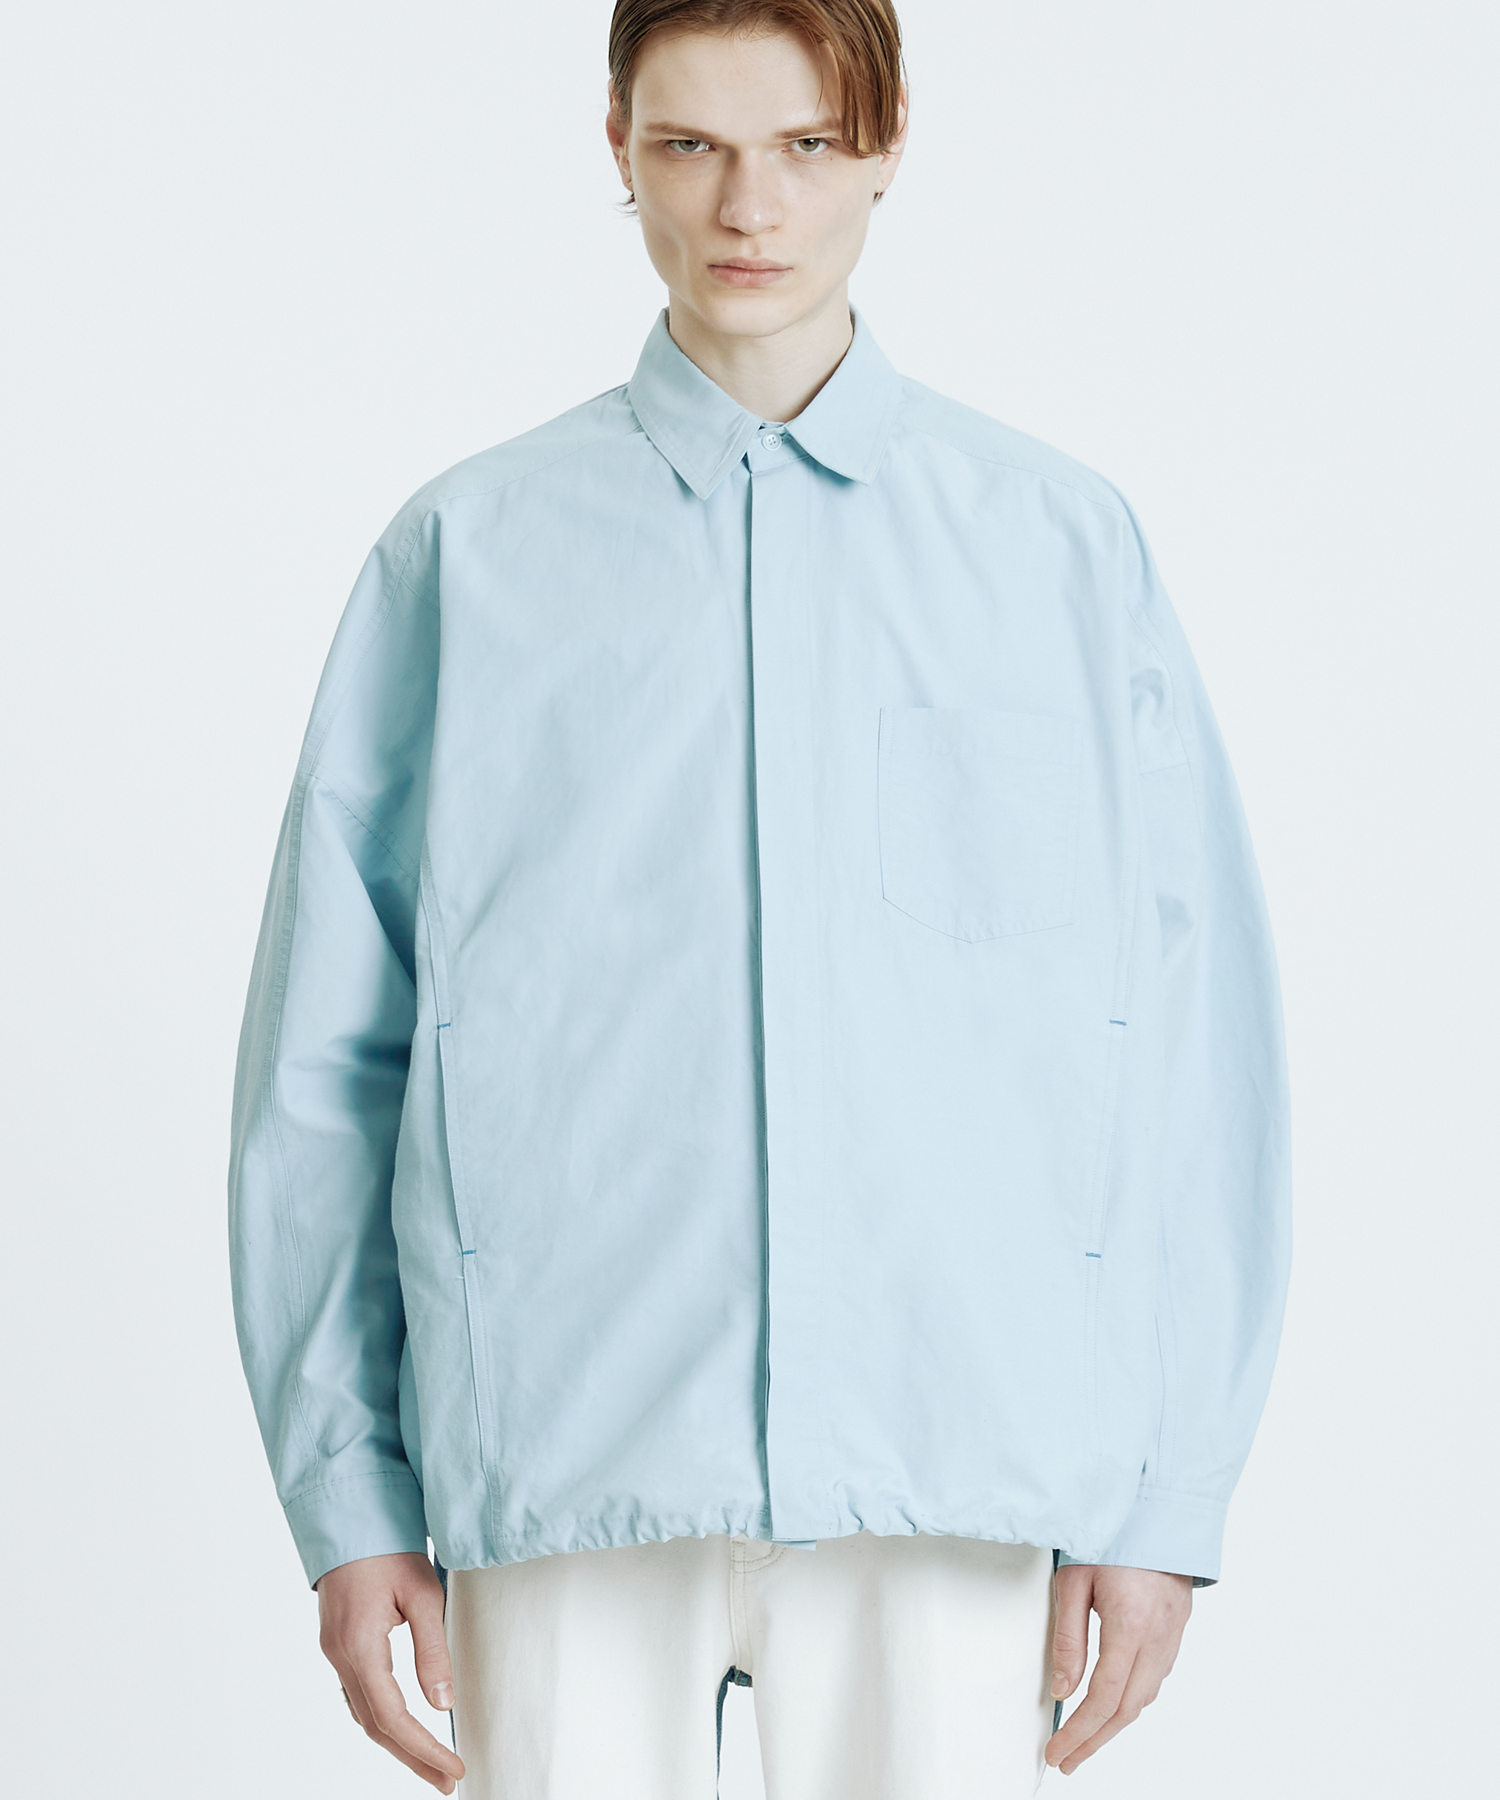 바택 포인트 셔츠 재킷 스카이블루